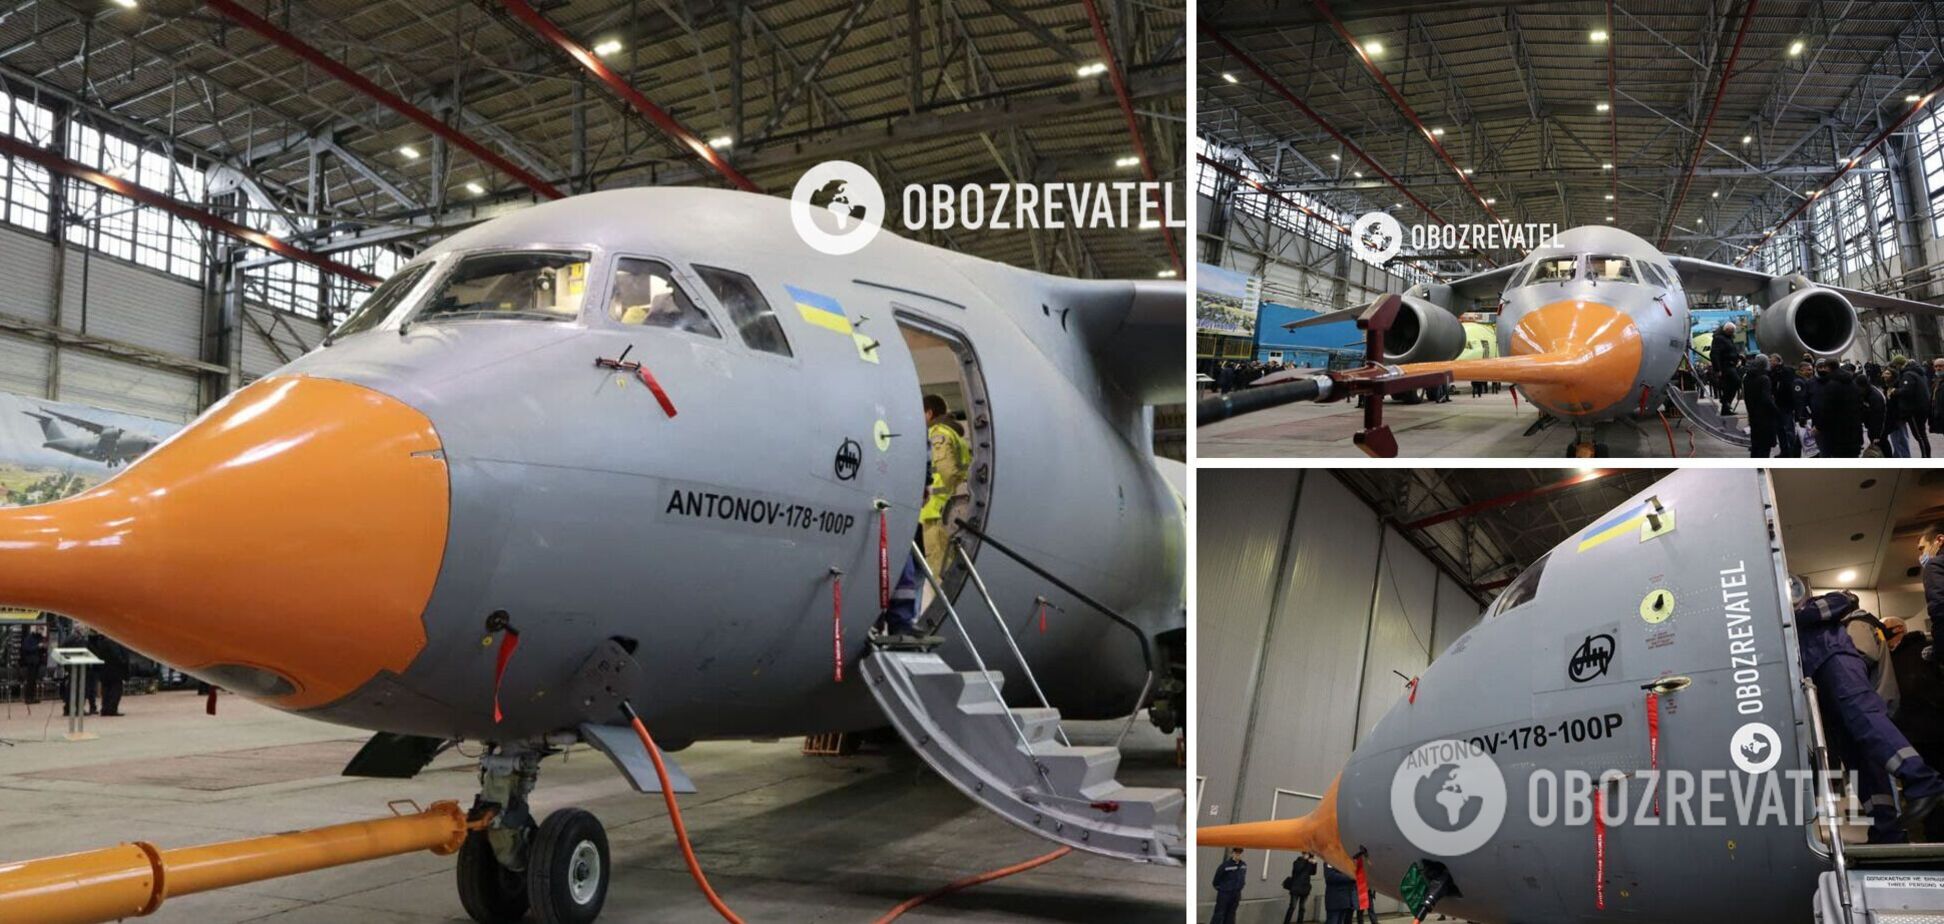 ГП 'Антонов' представило военно-транспортный самолет нового поколения Ан-178-100Р